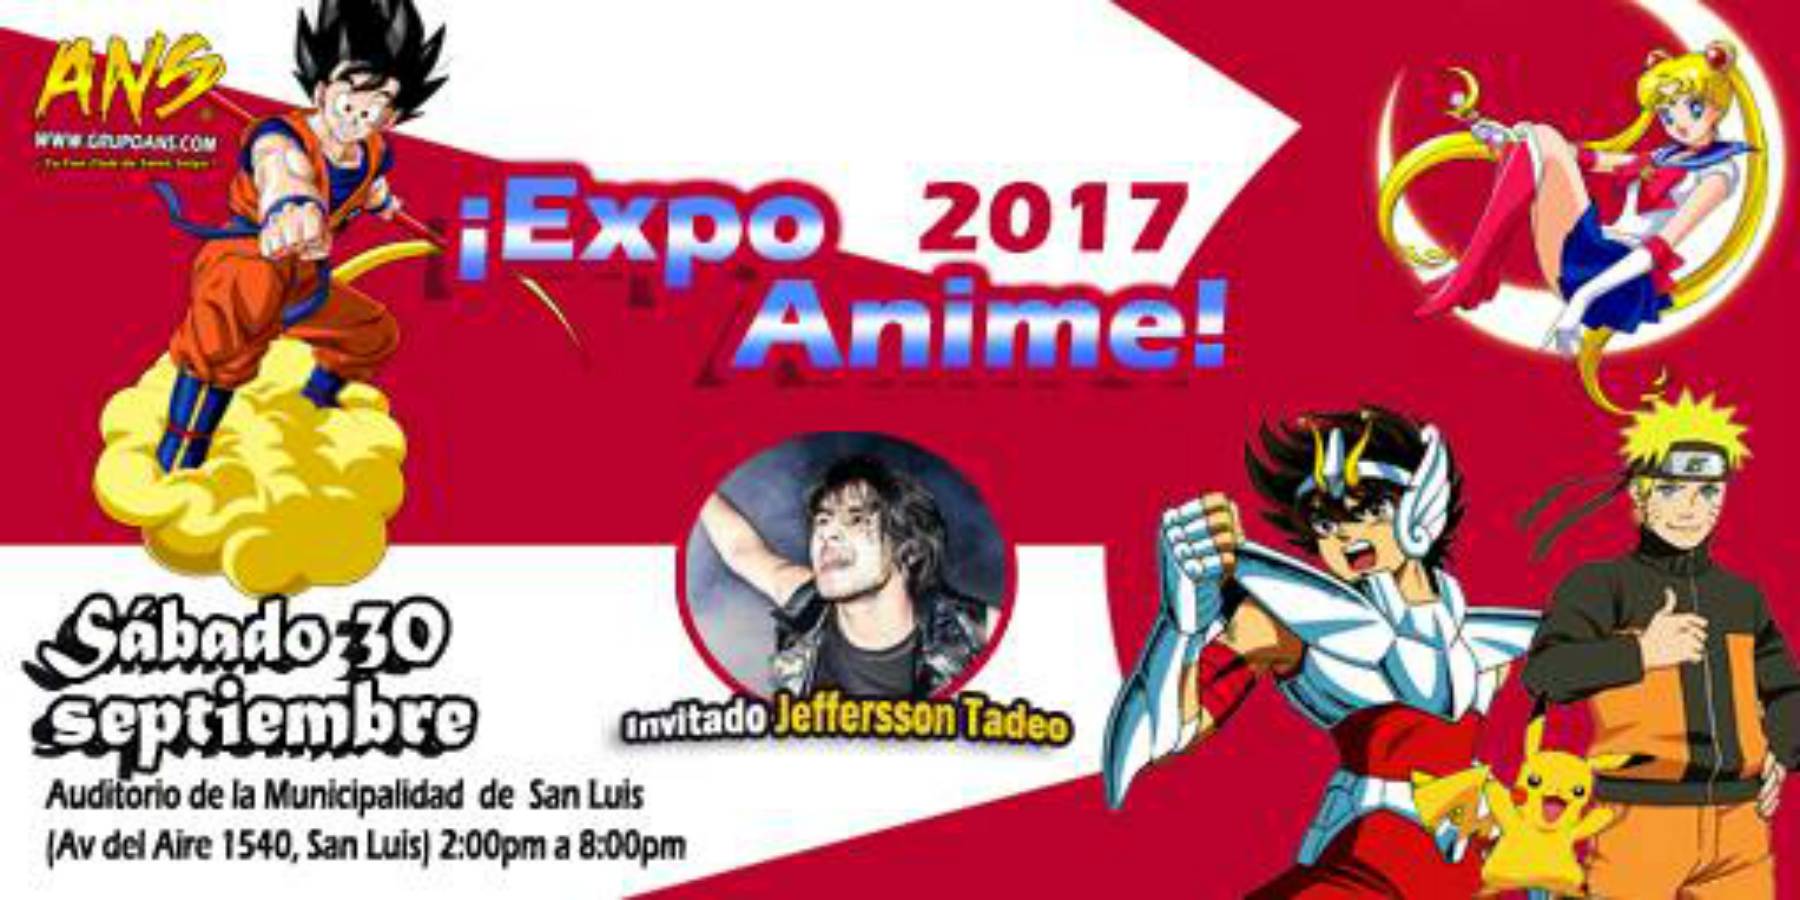 Expo Anime 2017 | Municipalidad de San Luis